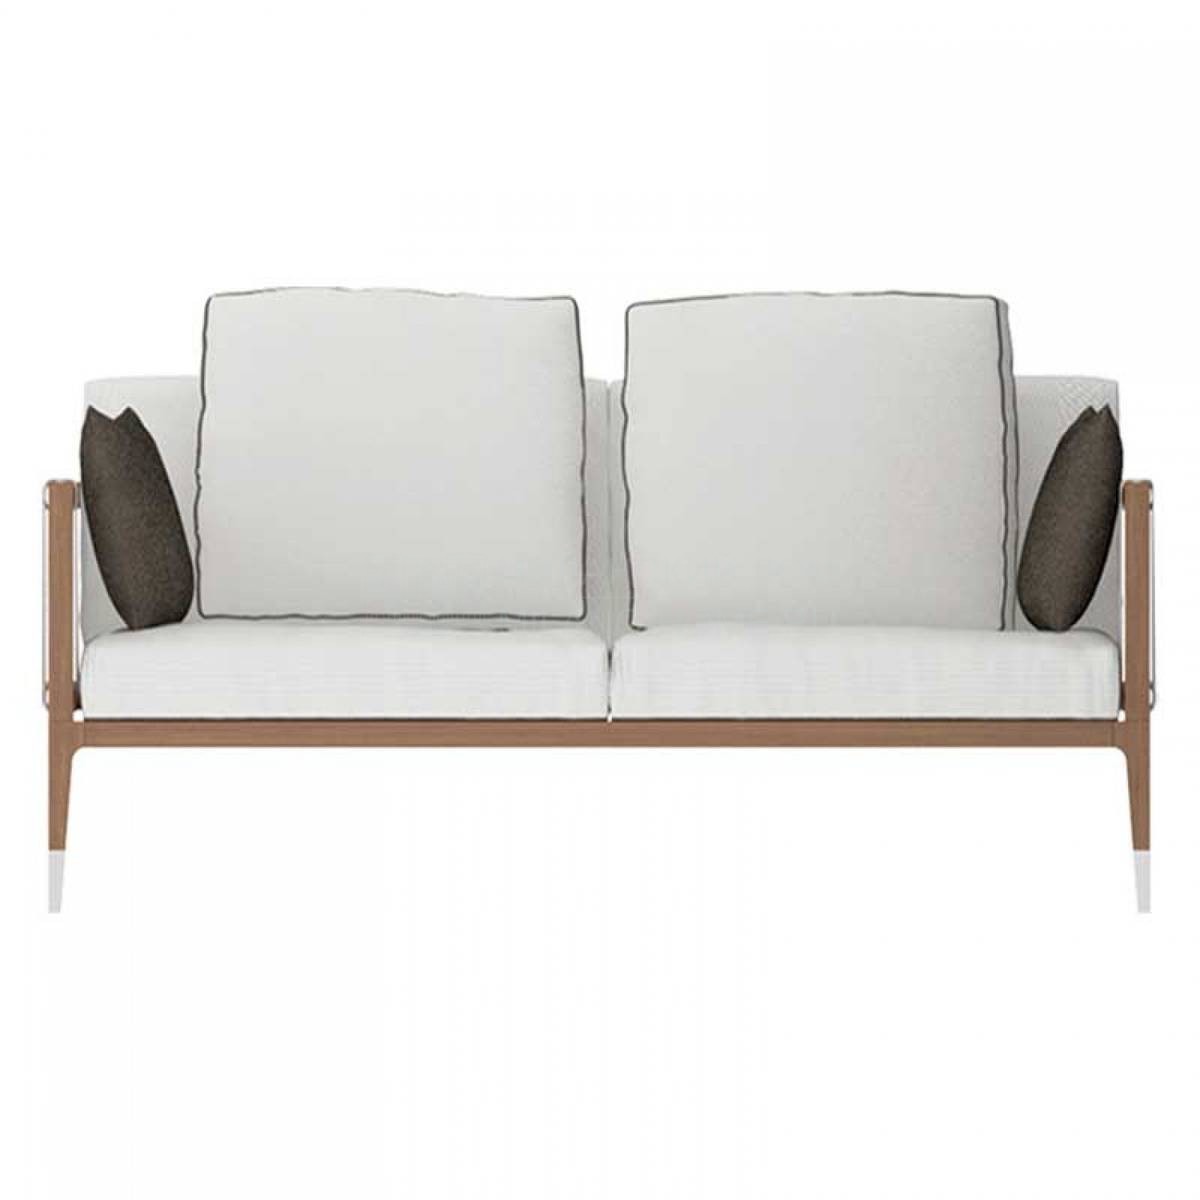 Прямой диван Amalfi / sofa2 из Италии фабрики SMANIA